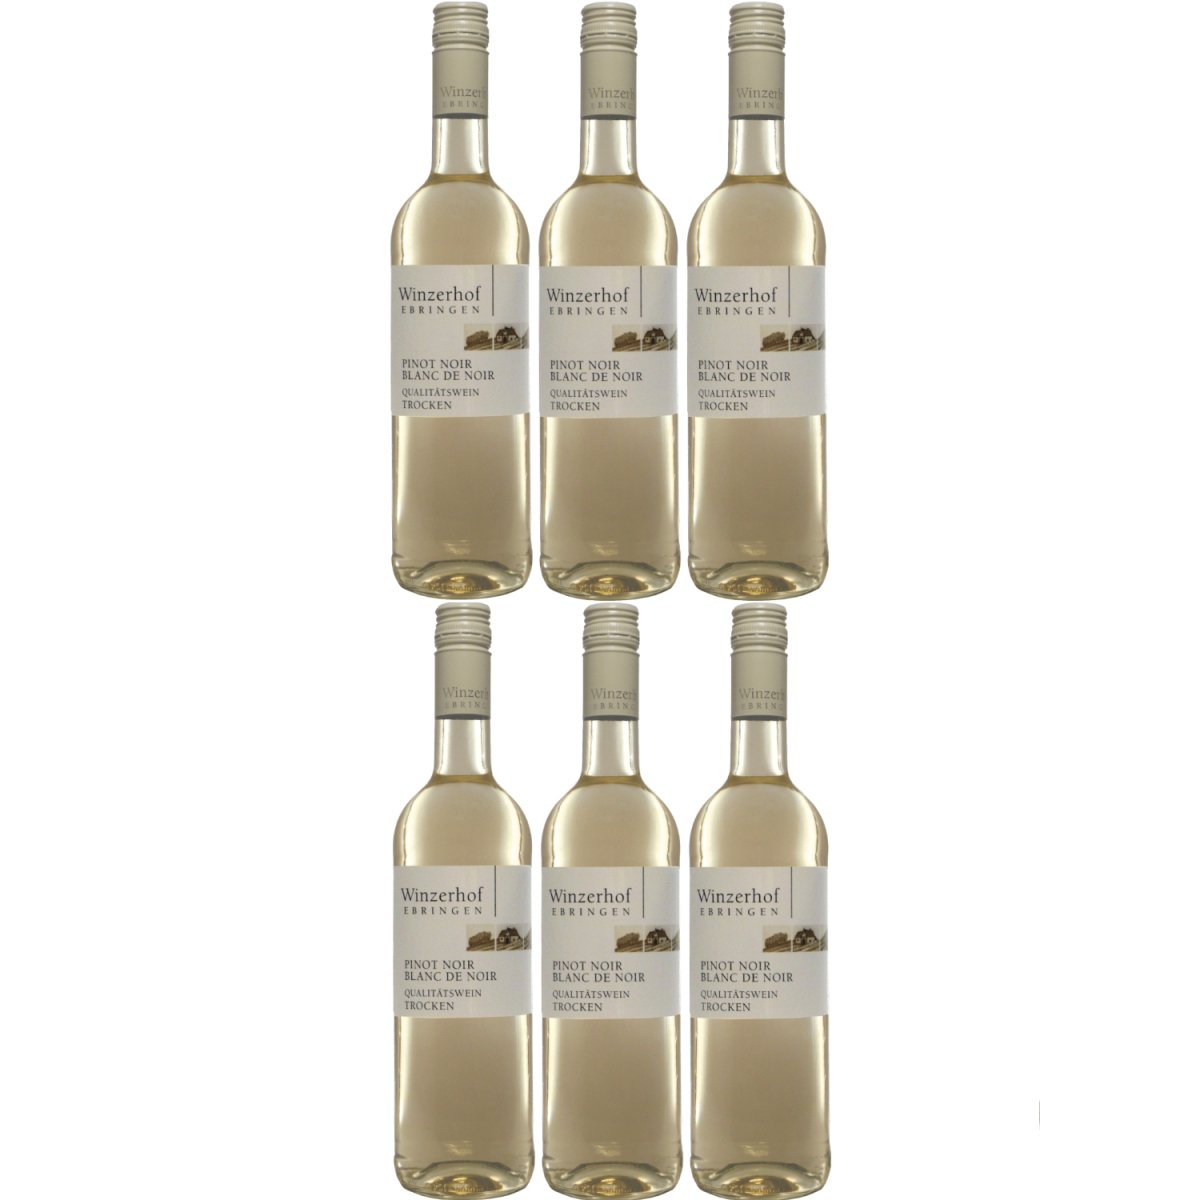 Winzerhof Ebringen Pinot Blanc de Noirs trocken Weißwein Wein Deutschland (6 x 0,75 l) - Versanel -